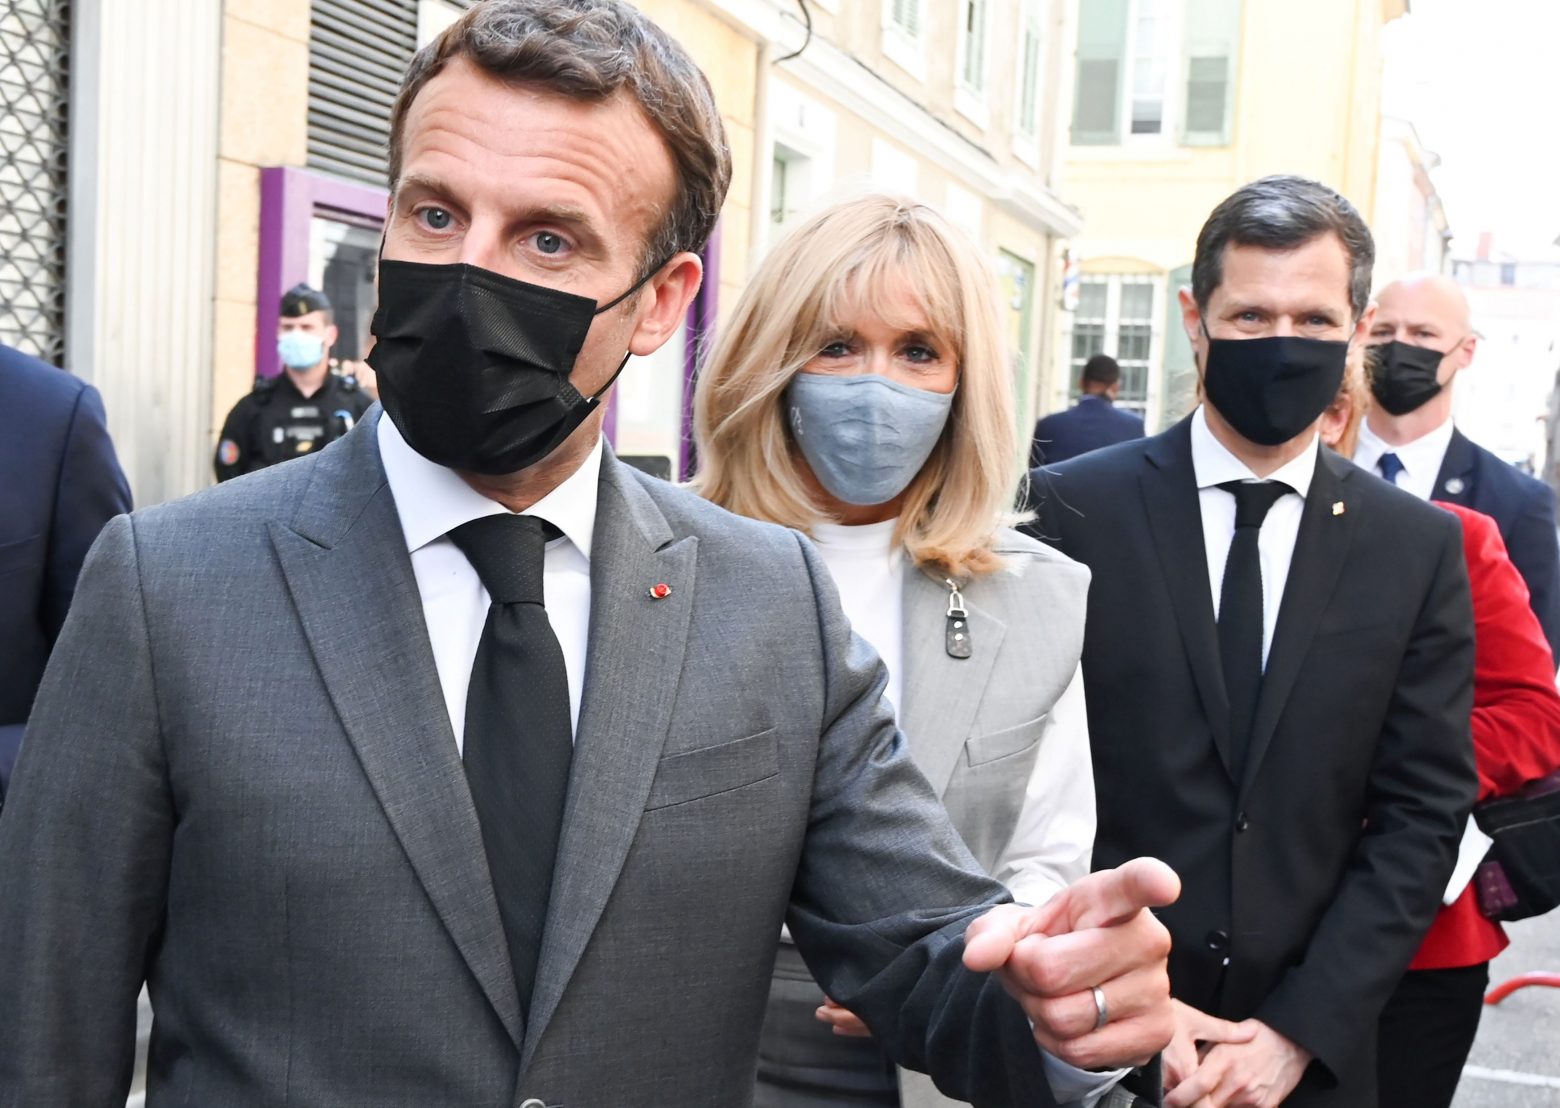 Γαλλία: Η πρώτη δήλωση του Μακρόν μετά το χαστούκι – Νέο βίντεο στη δημοσιότητα